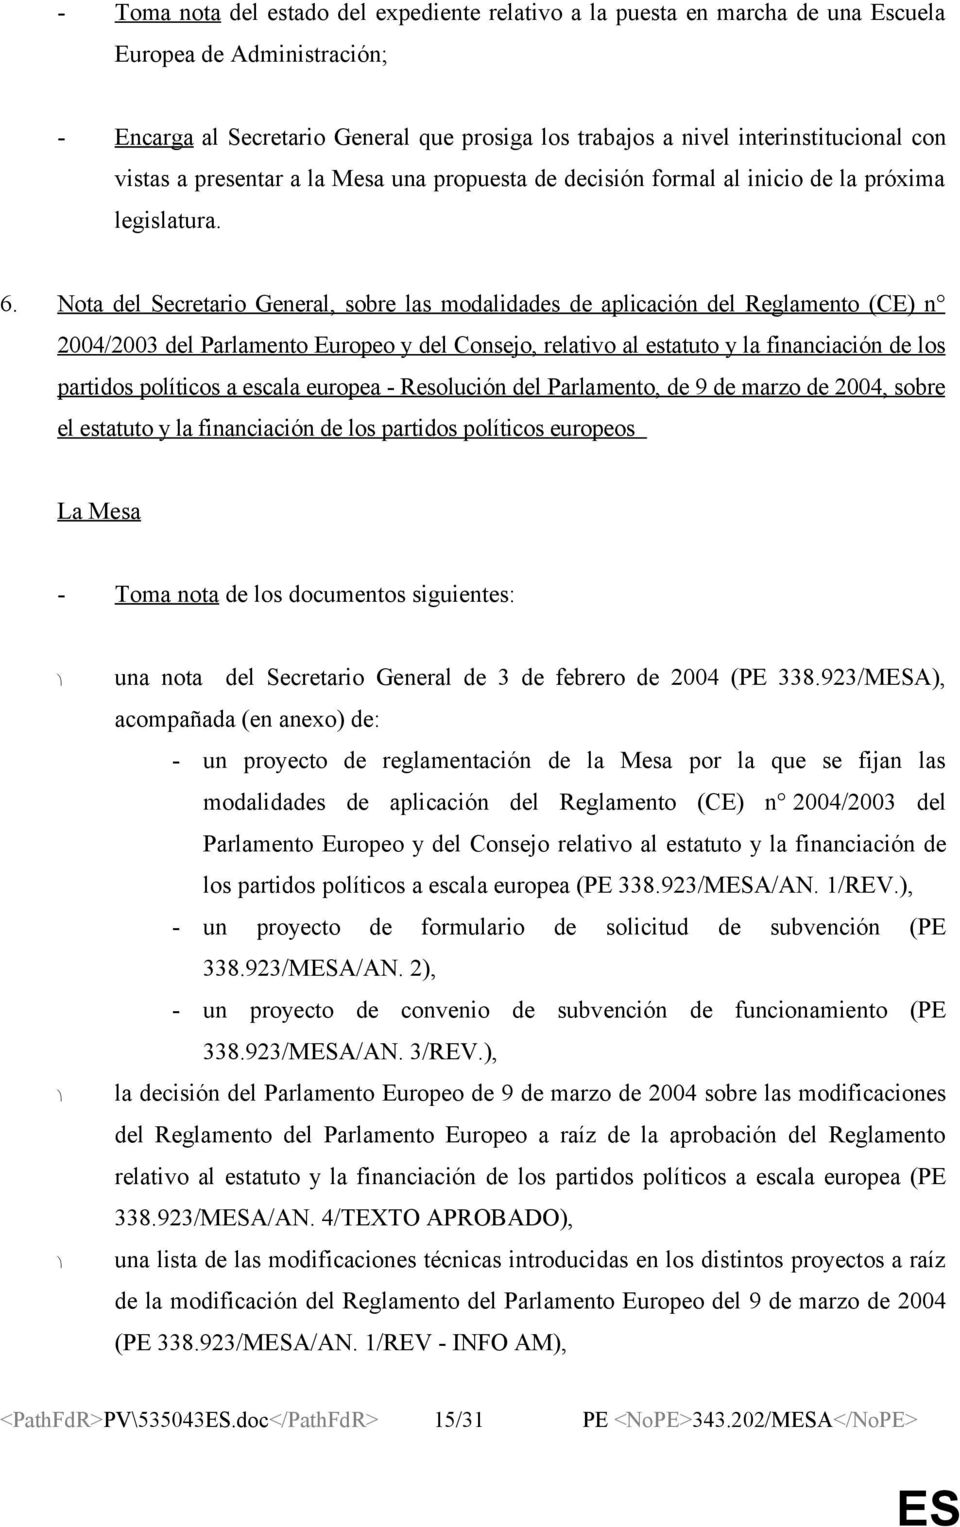 Nota del Secretario General, sobre las modalidades de aplicación del Reglamento (CE) n 2004/2003 del Parlamento Europeo y del Consejo, relativo al estatuto y la financiación de los partidos políticos